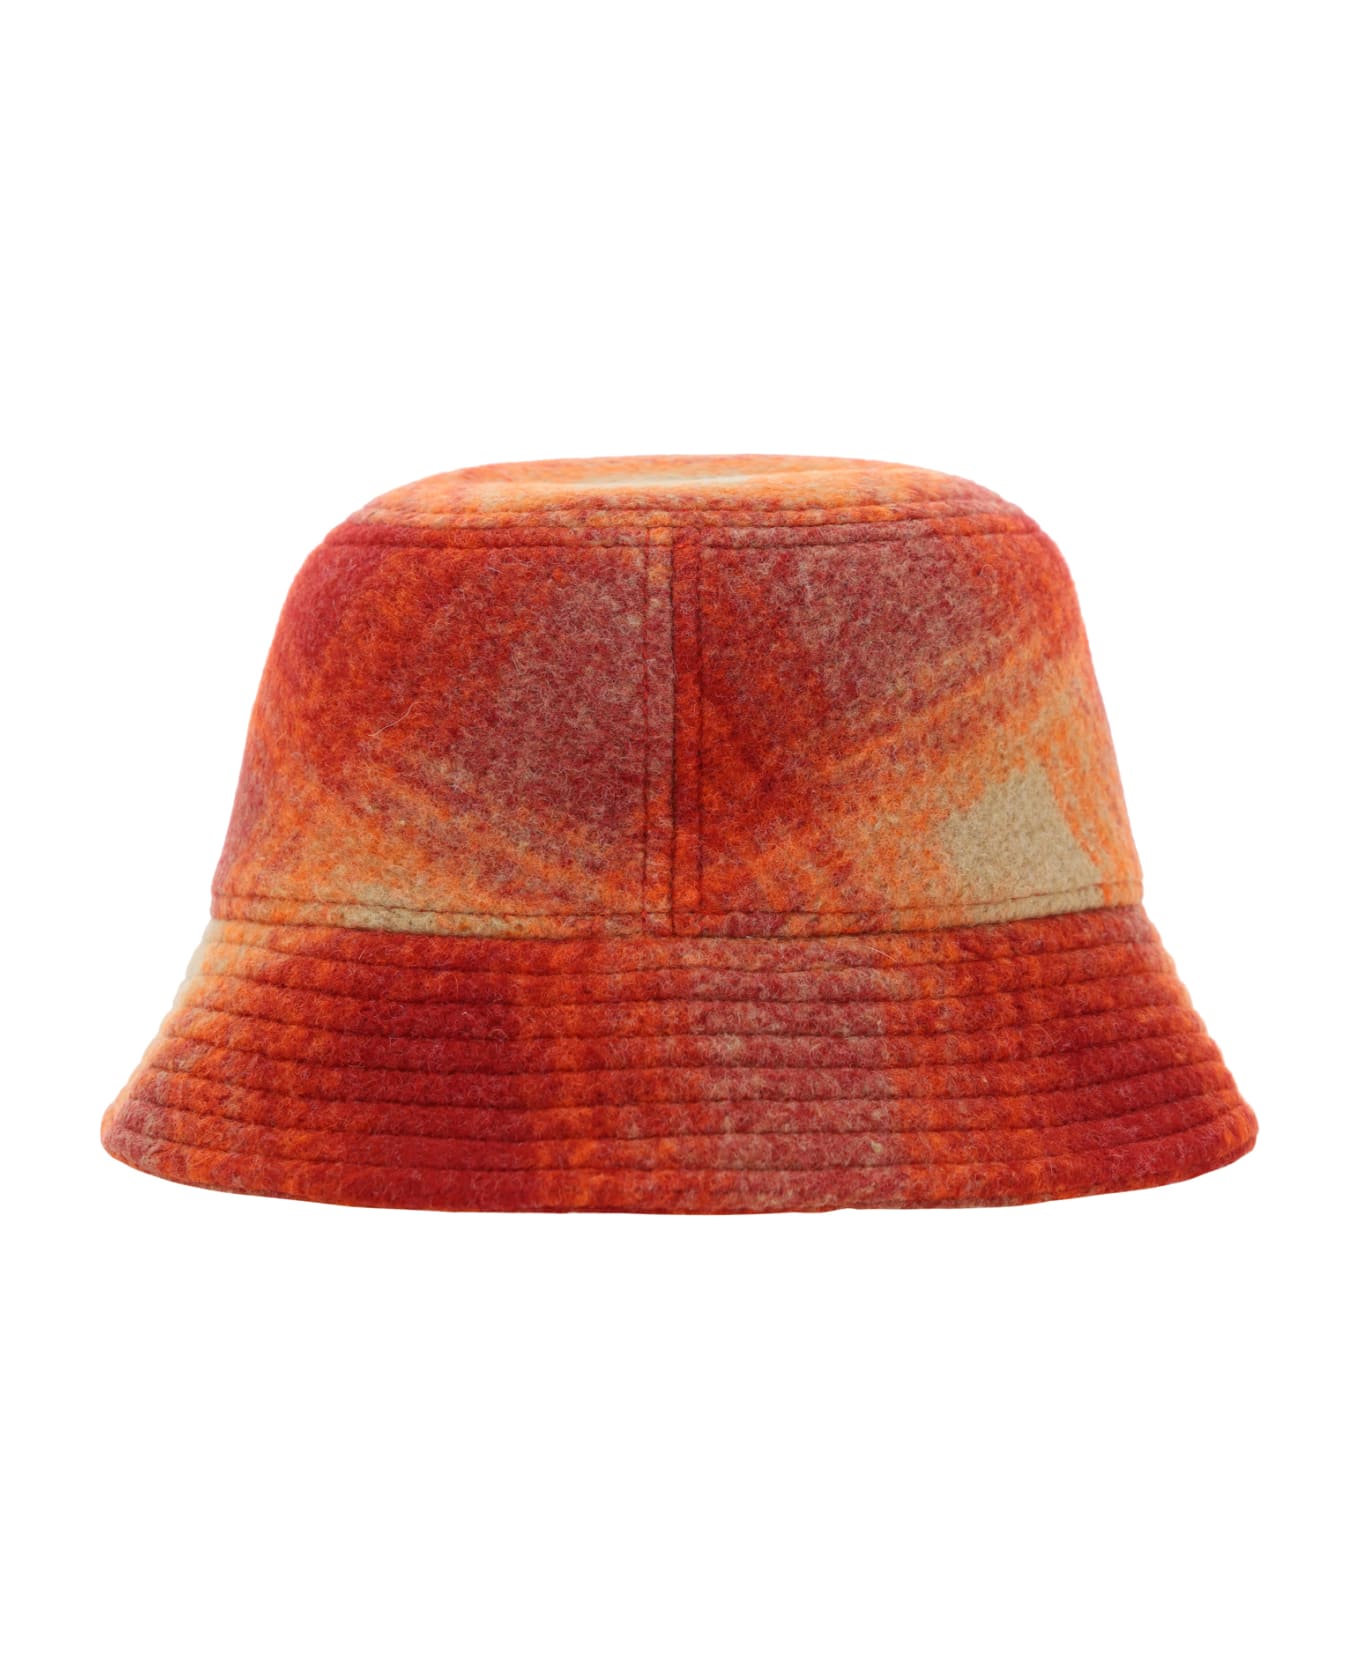 Isabel Marant Haley Bucket Hat - Orange